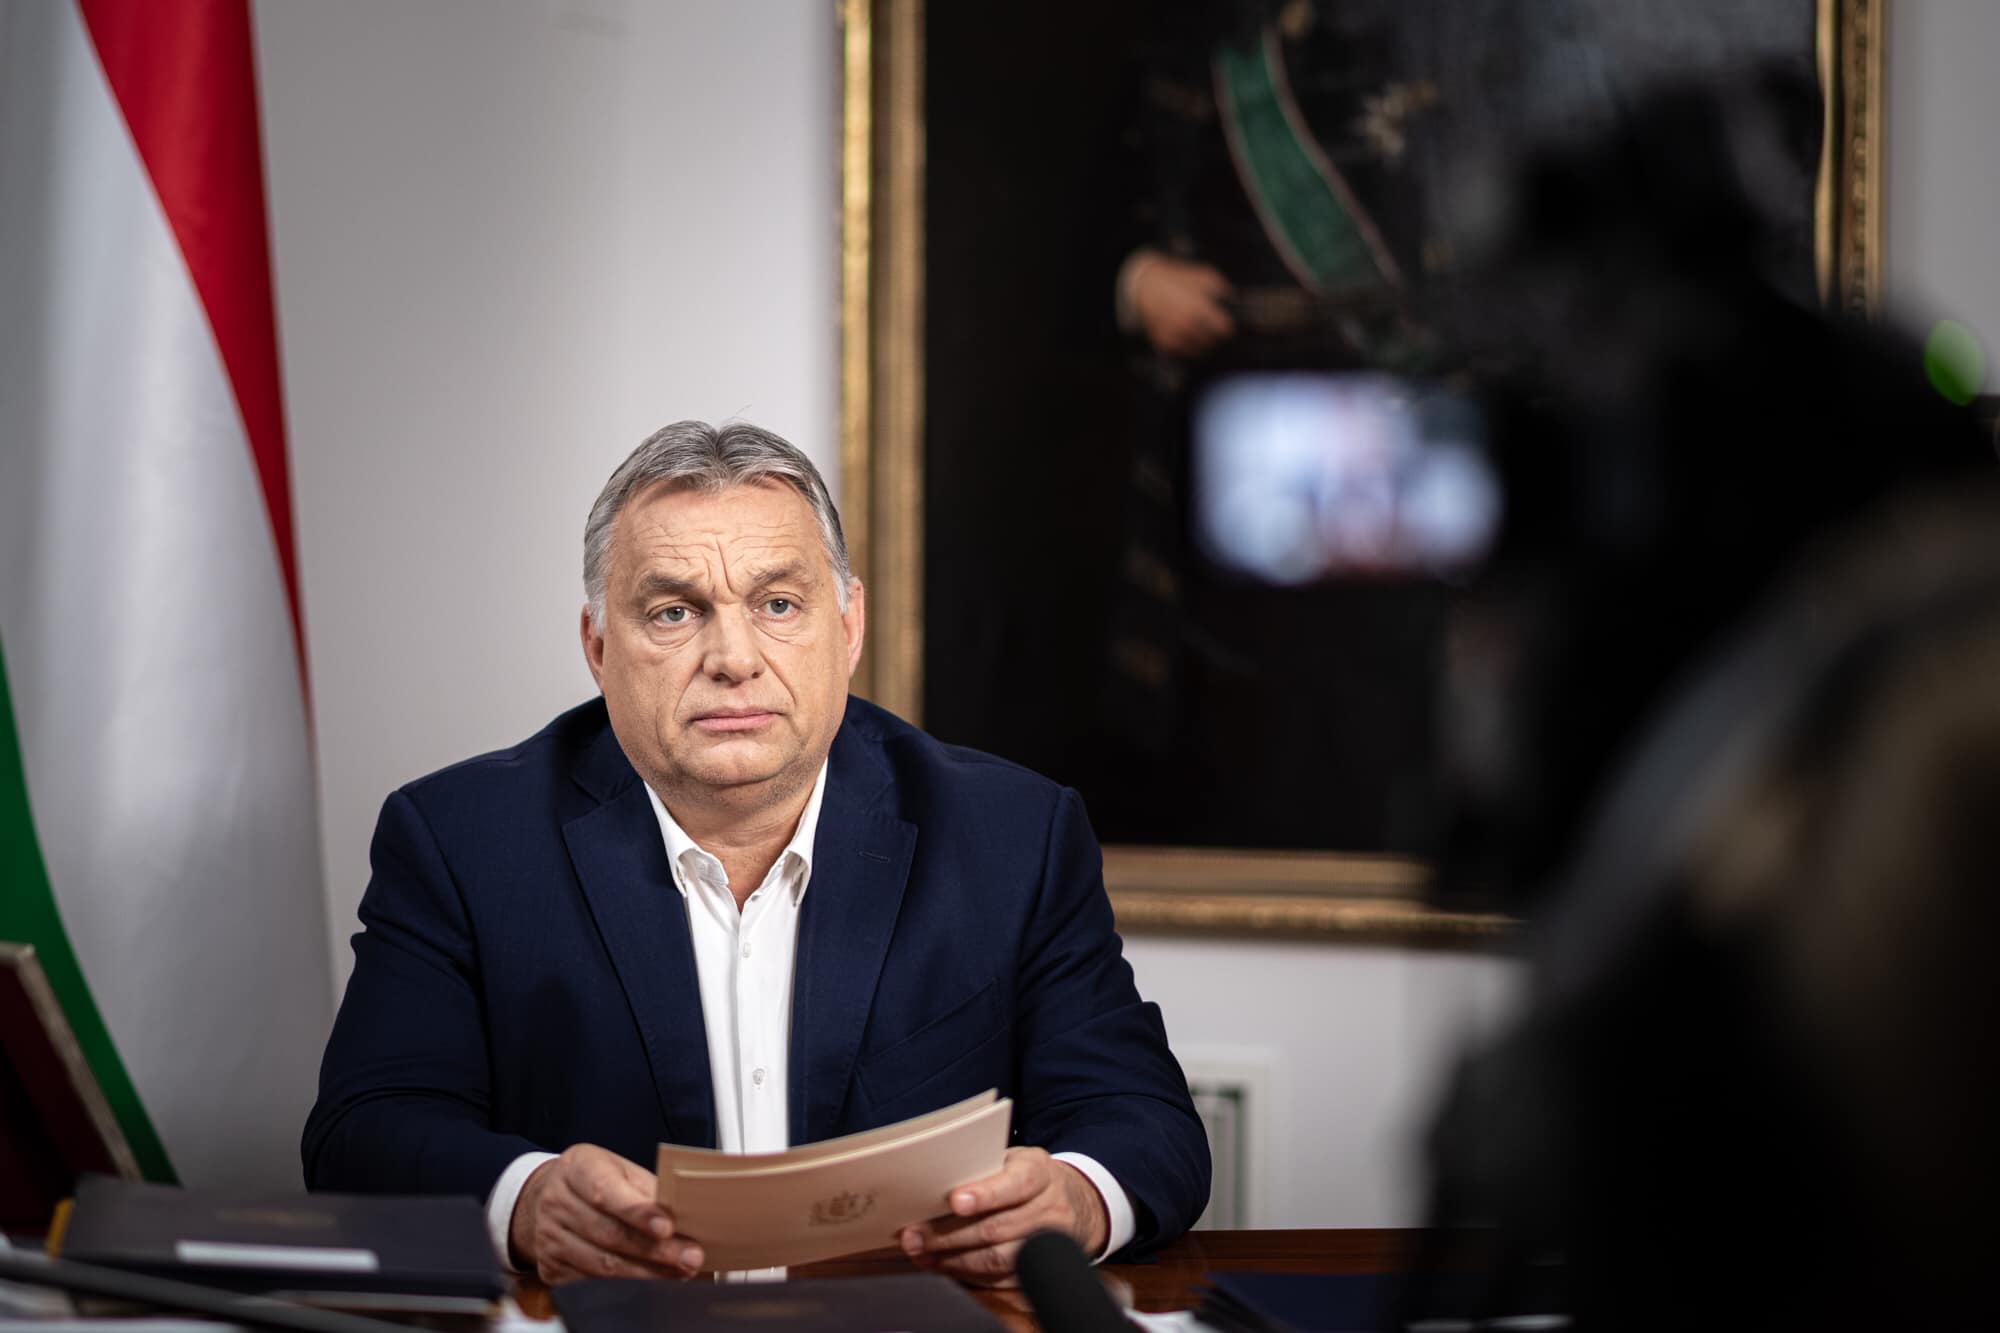 Ízlés kérdése, hogy ki mennyire hisz Orbán Viktornak